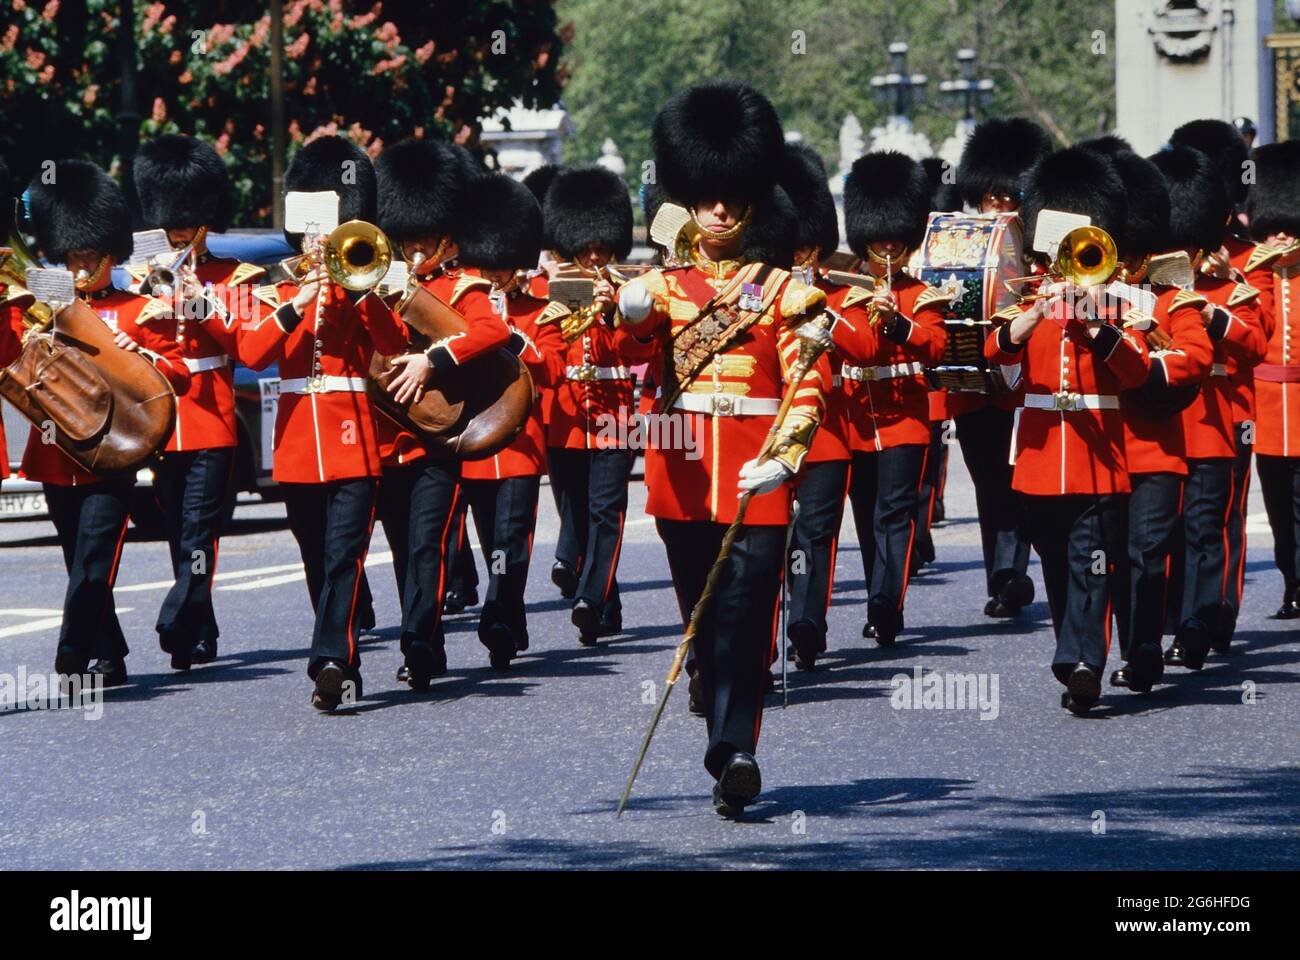 Bande de Marching des gardes irlandais. Changement de la garde au palais de Buckingham. Londres, Angleterre, Royaume-Uni. Vers les années 1980 Banque D'Images